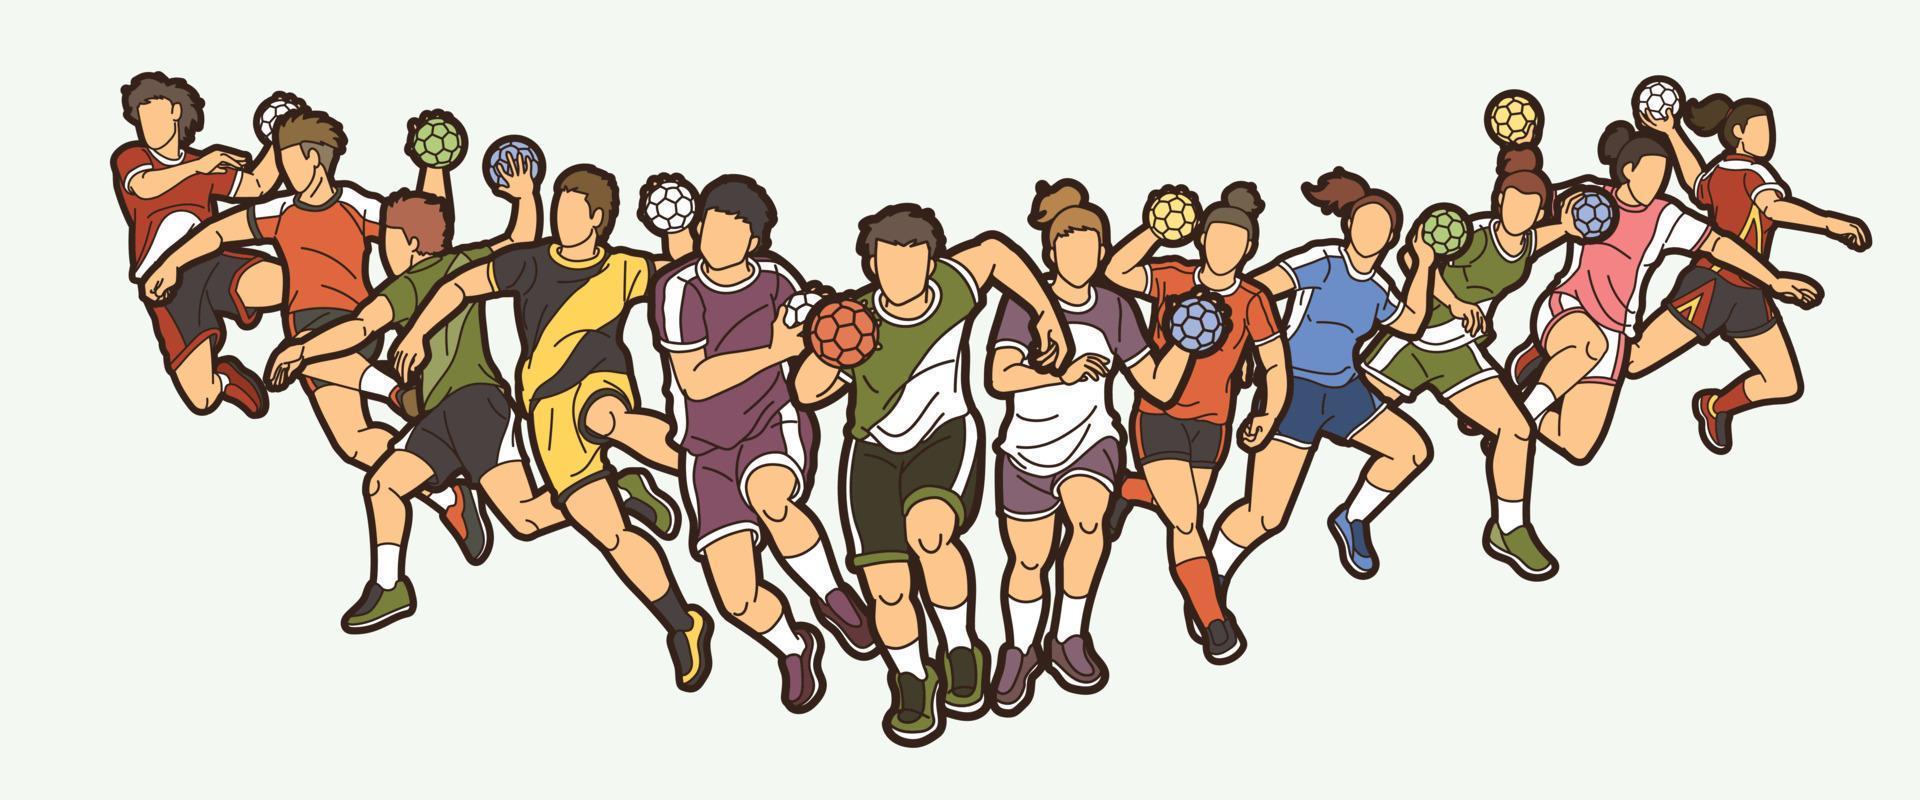 groep handbalspelers mannelijke en vrouwelijke mix actie cartoon sport afbeelding vector